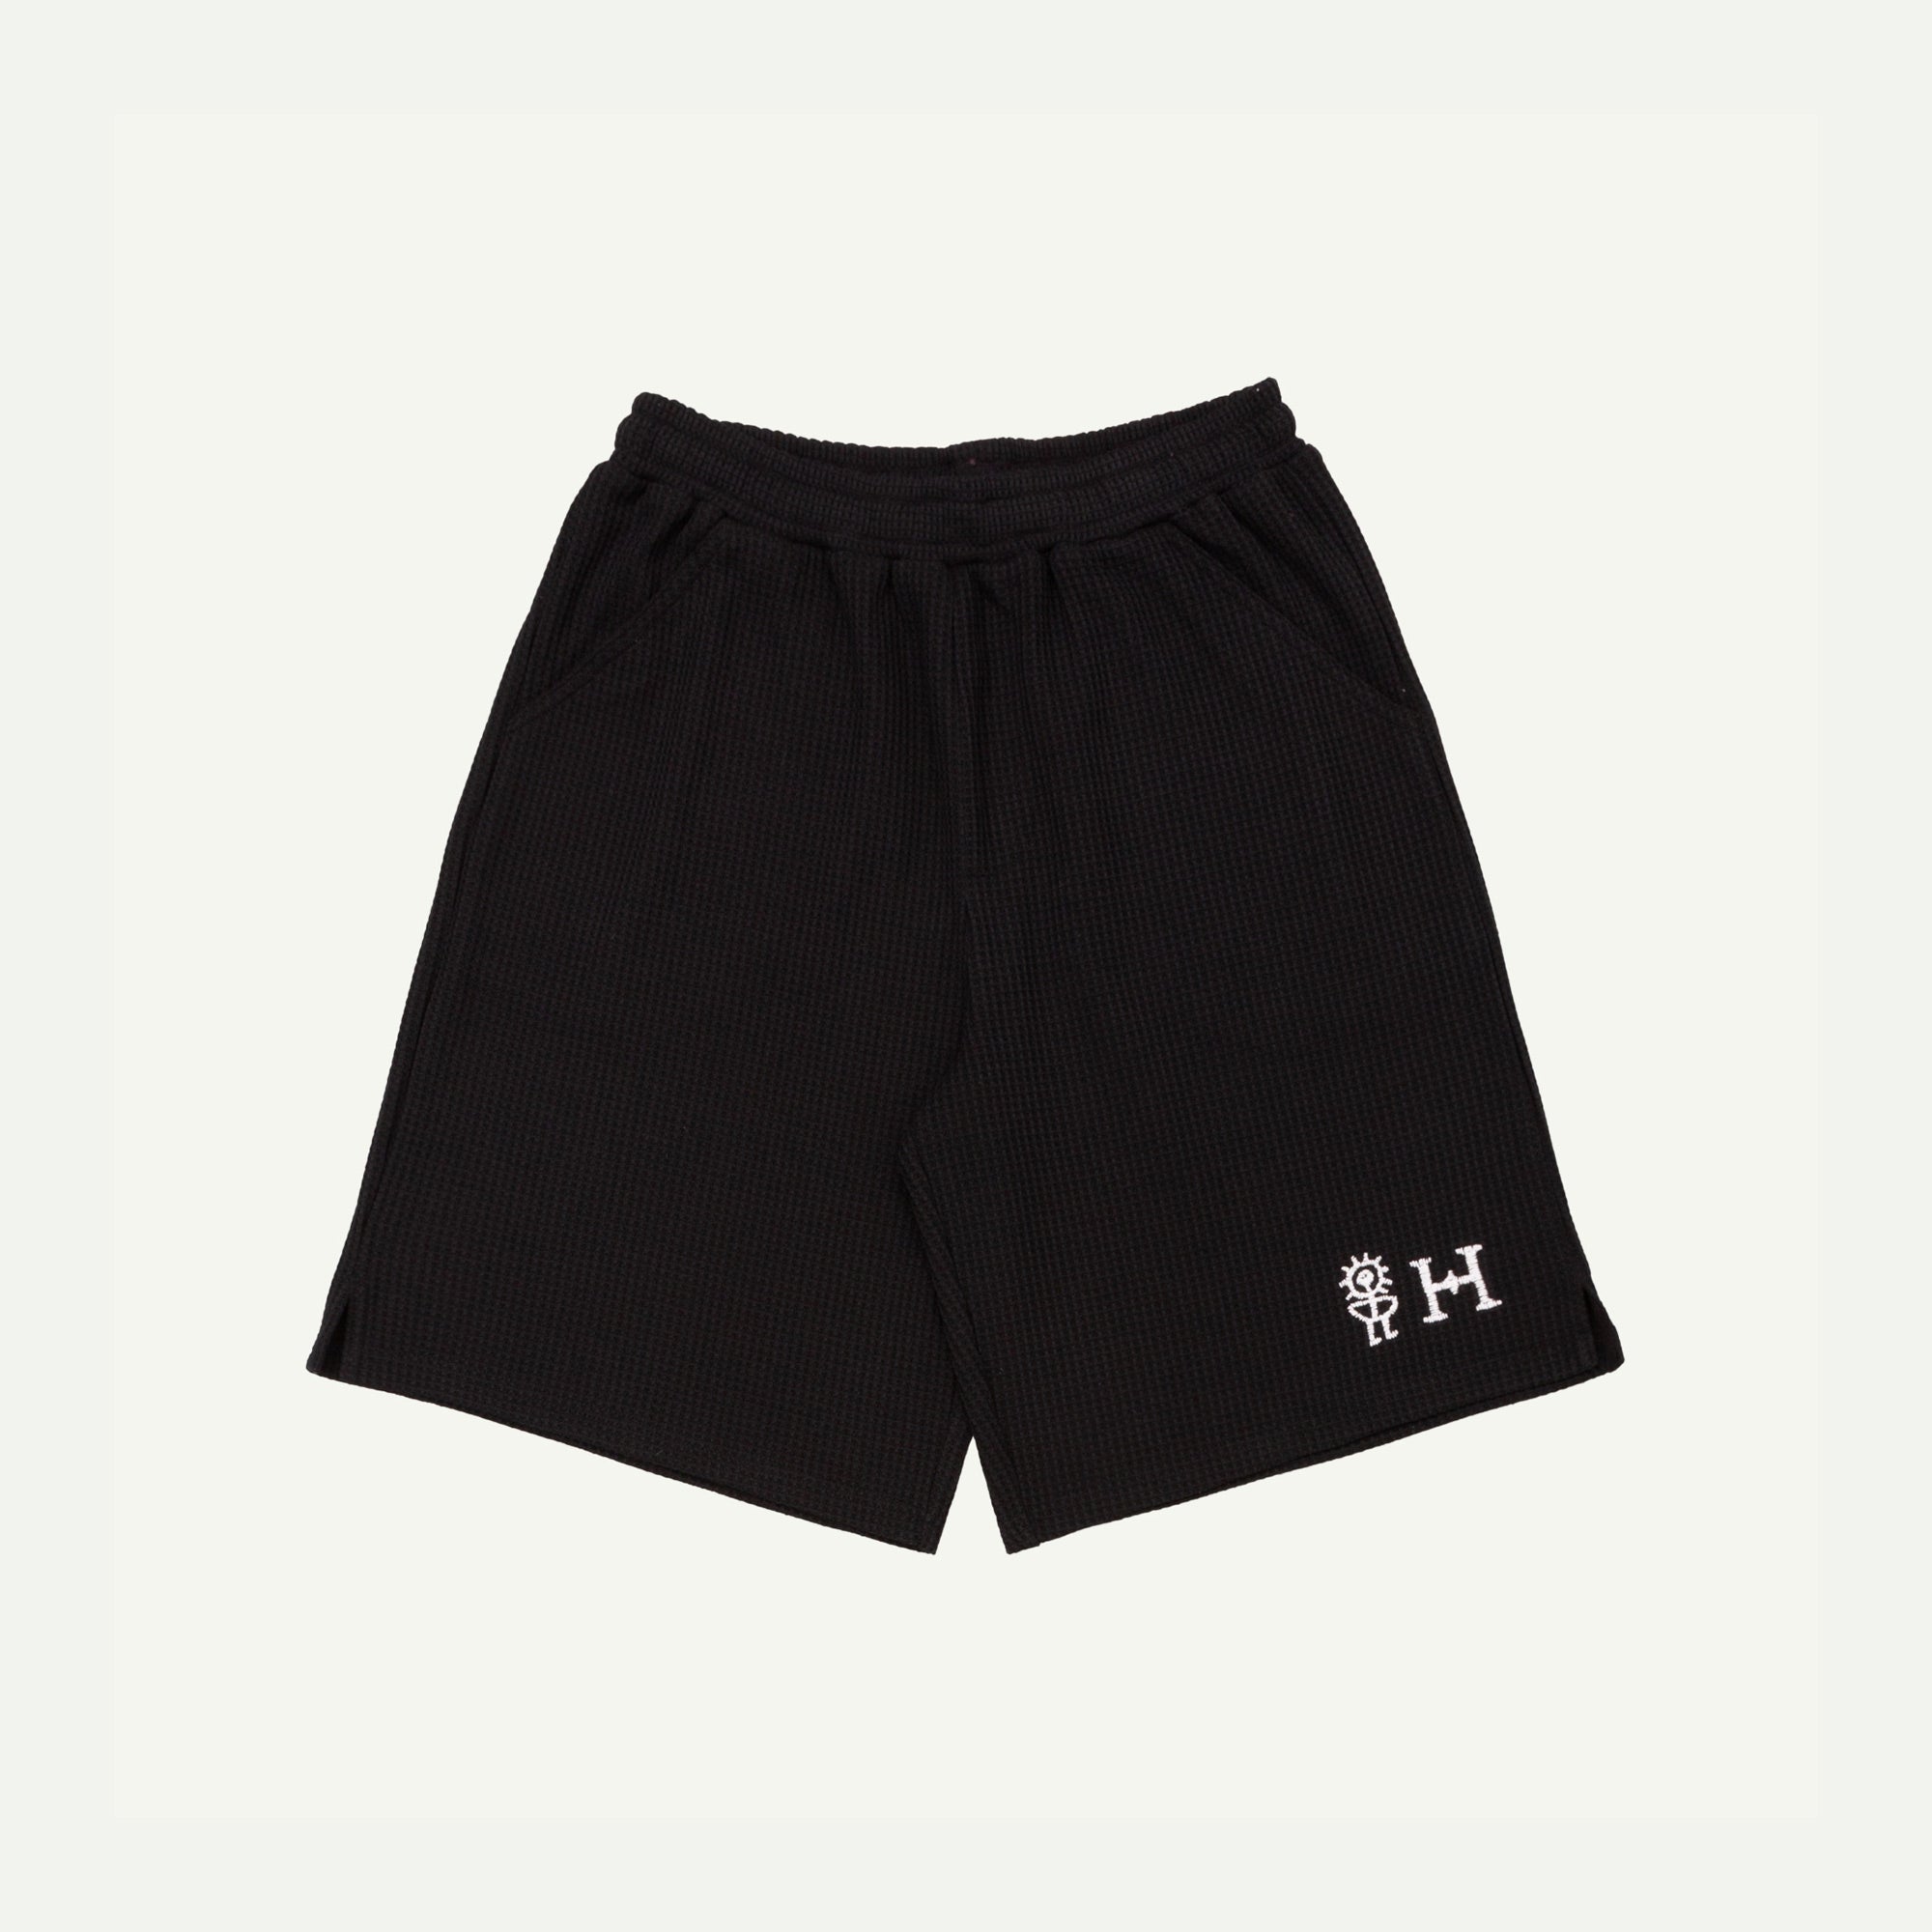 Heresy Black Sungod Shorts